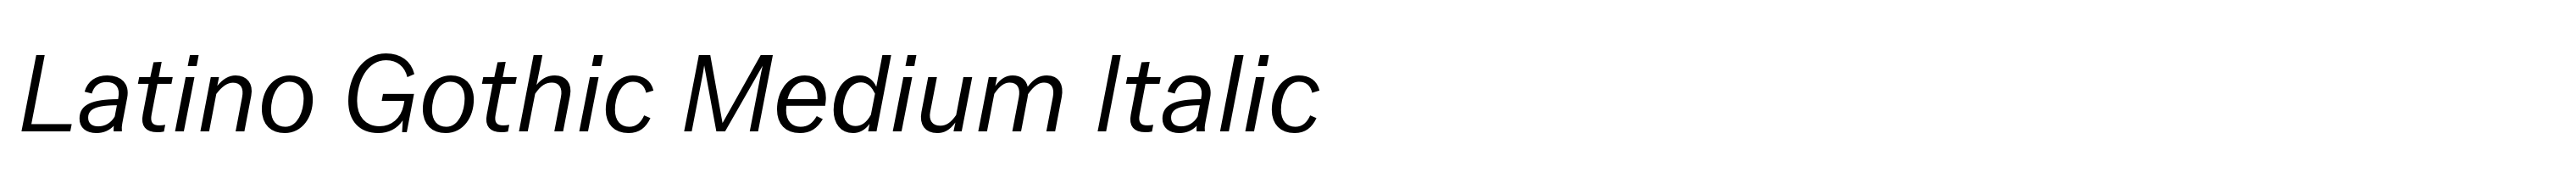 Latino Gothic Medium Italic